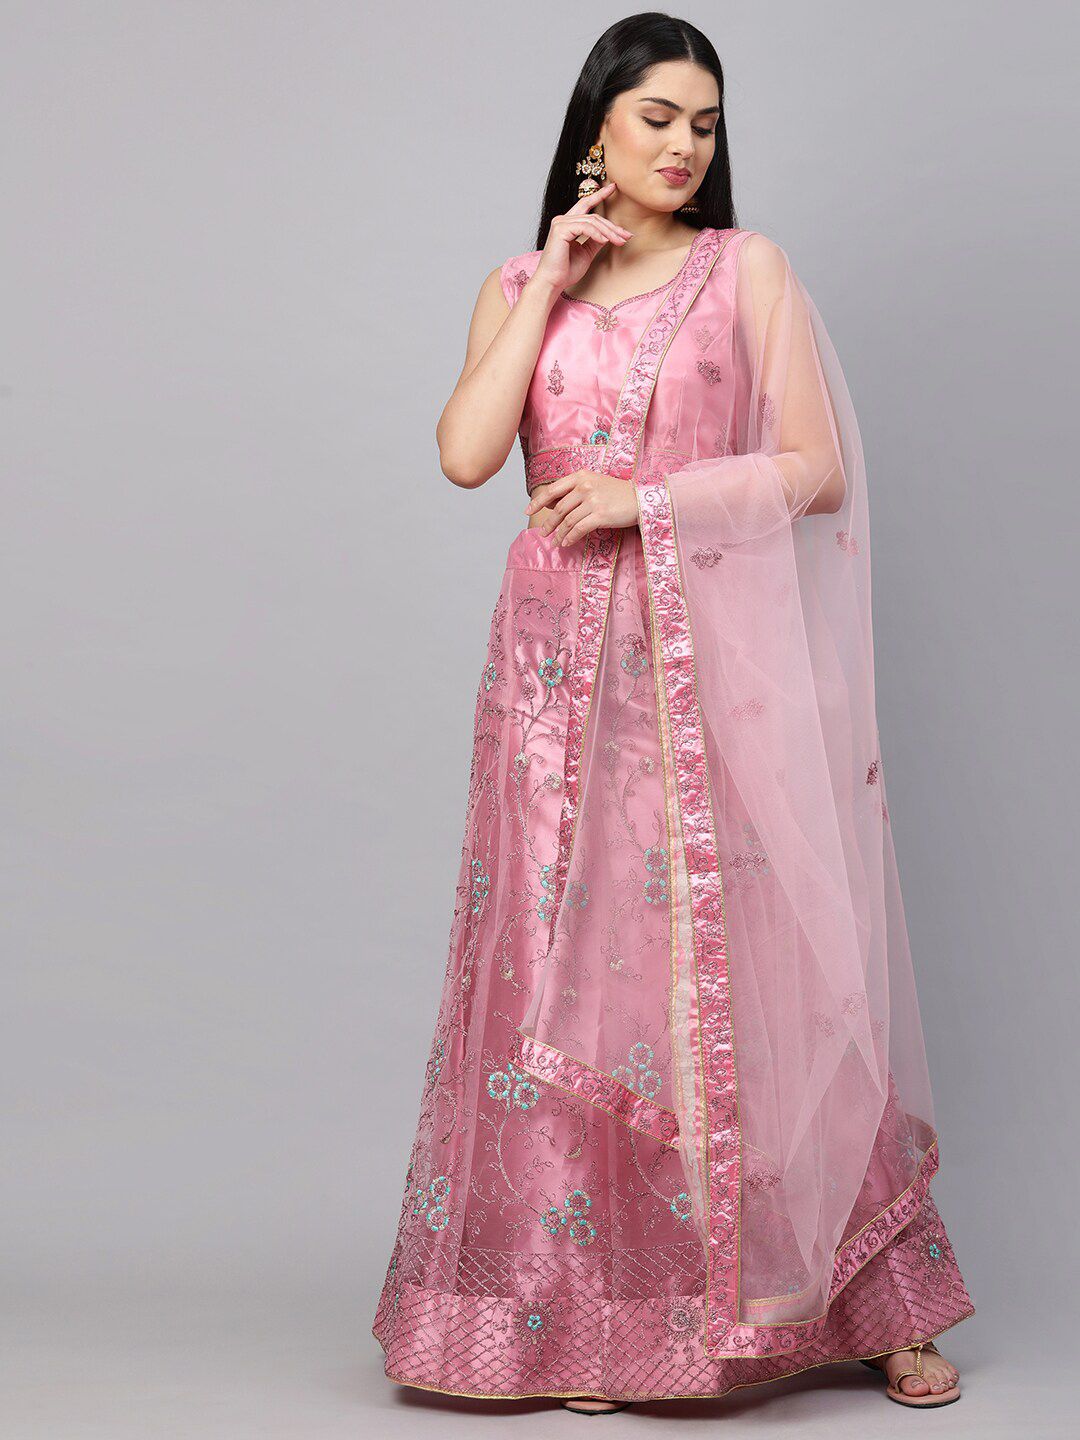 Rajesh Silk Mills Women Pink Lehenga Choli Price in India